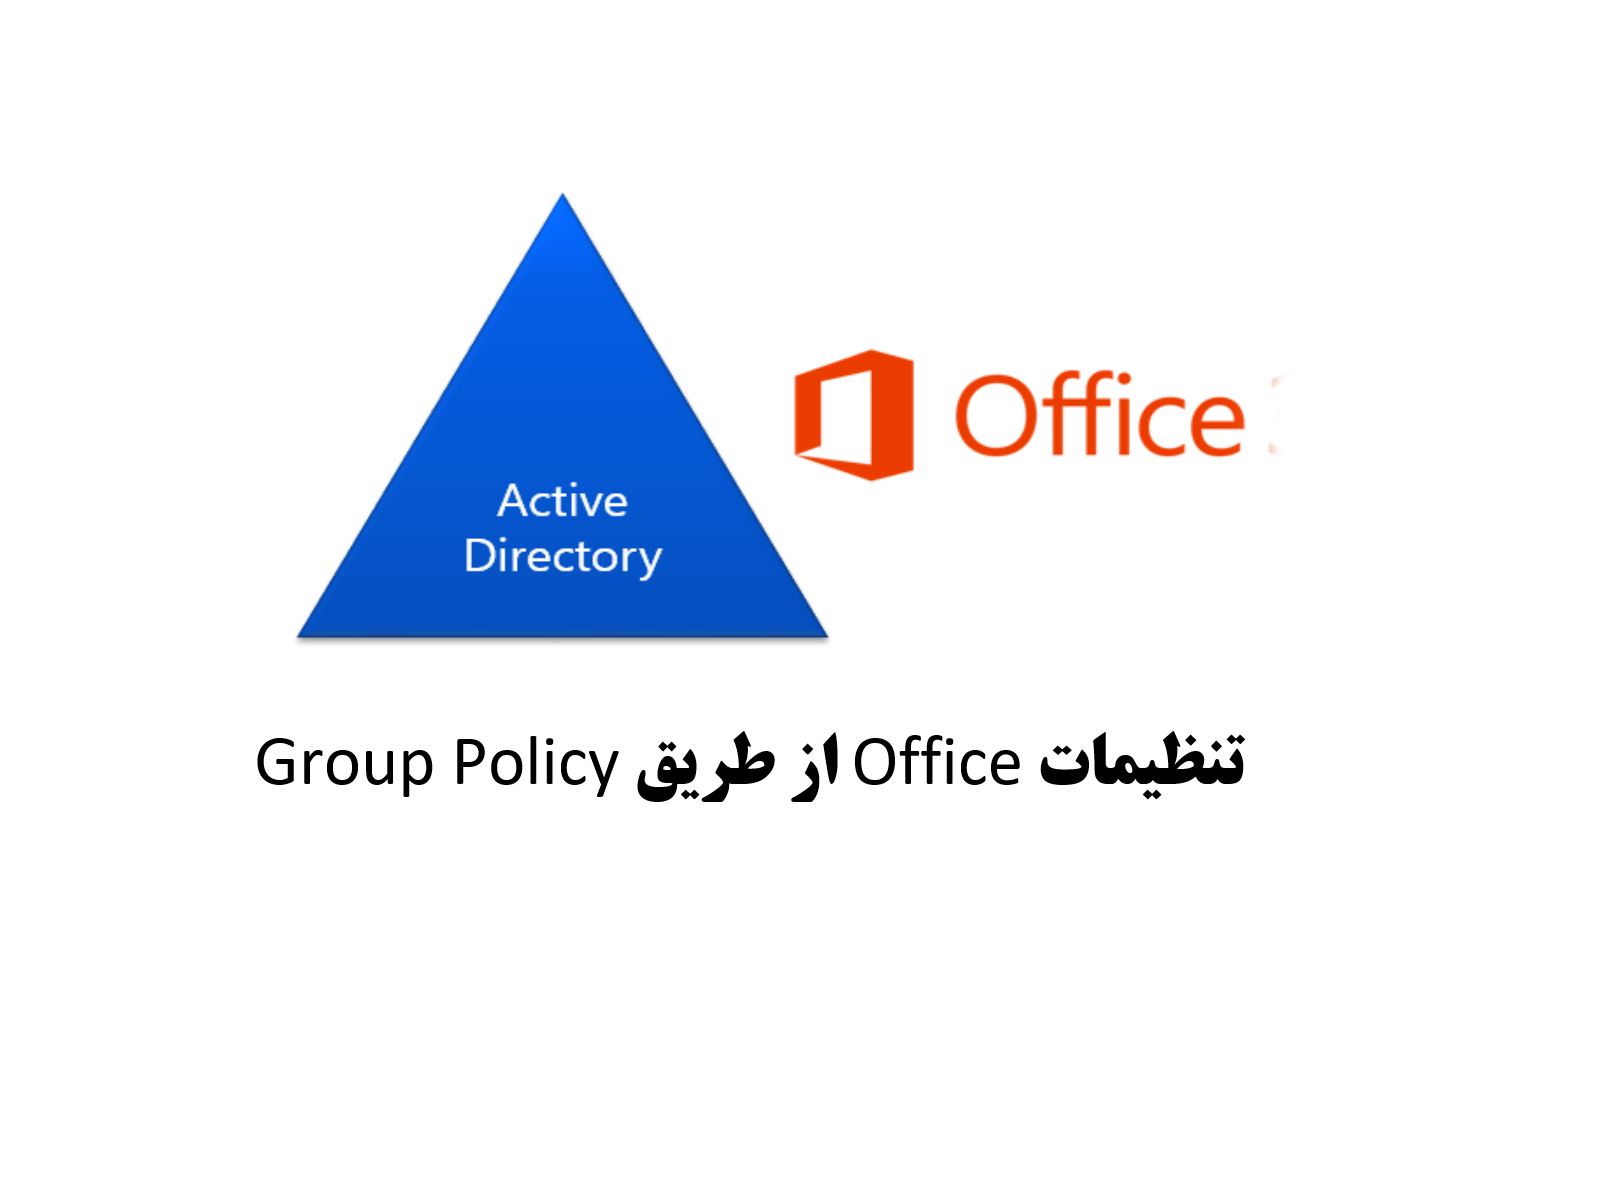 تنظیمات Office از طریق Group Policy به کاربران دامین